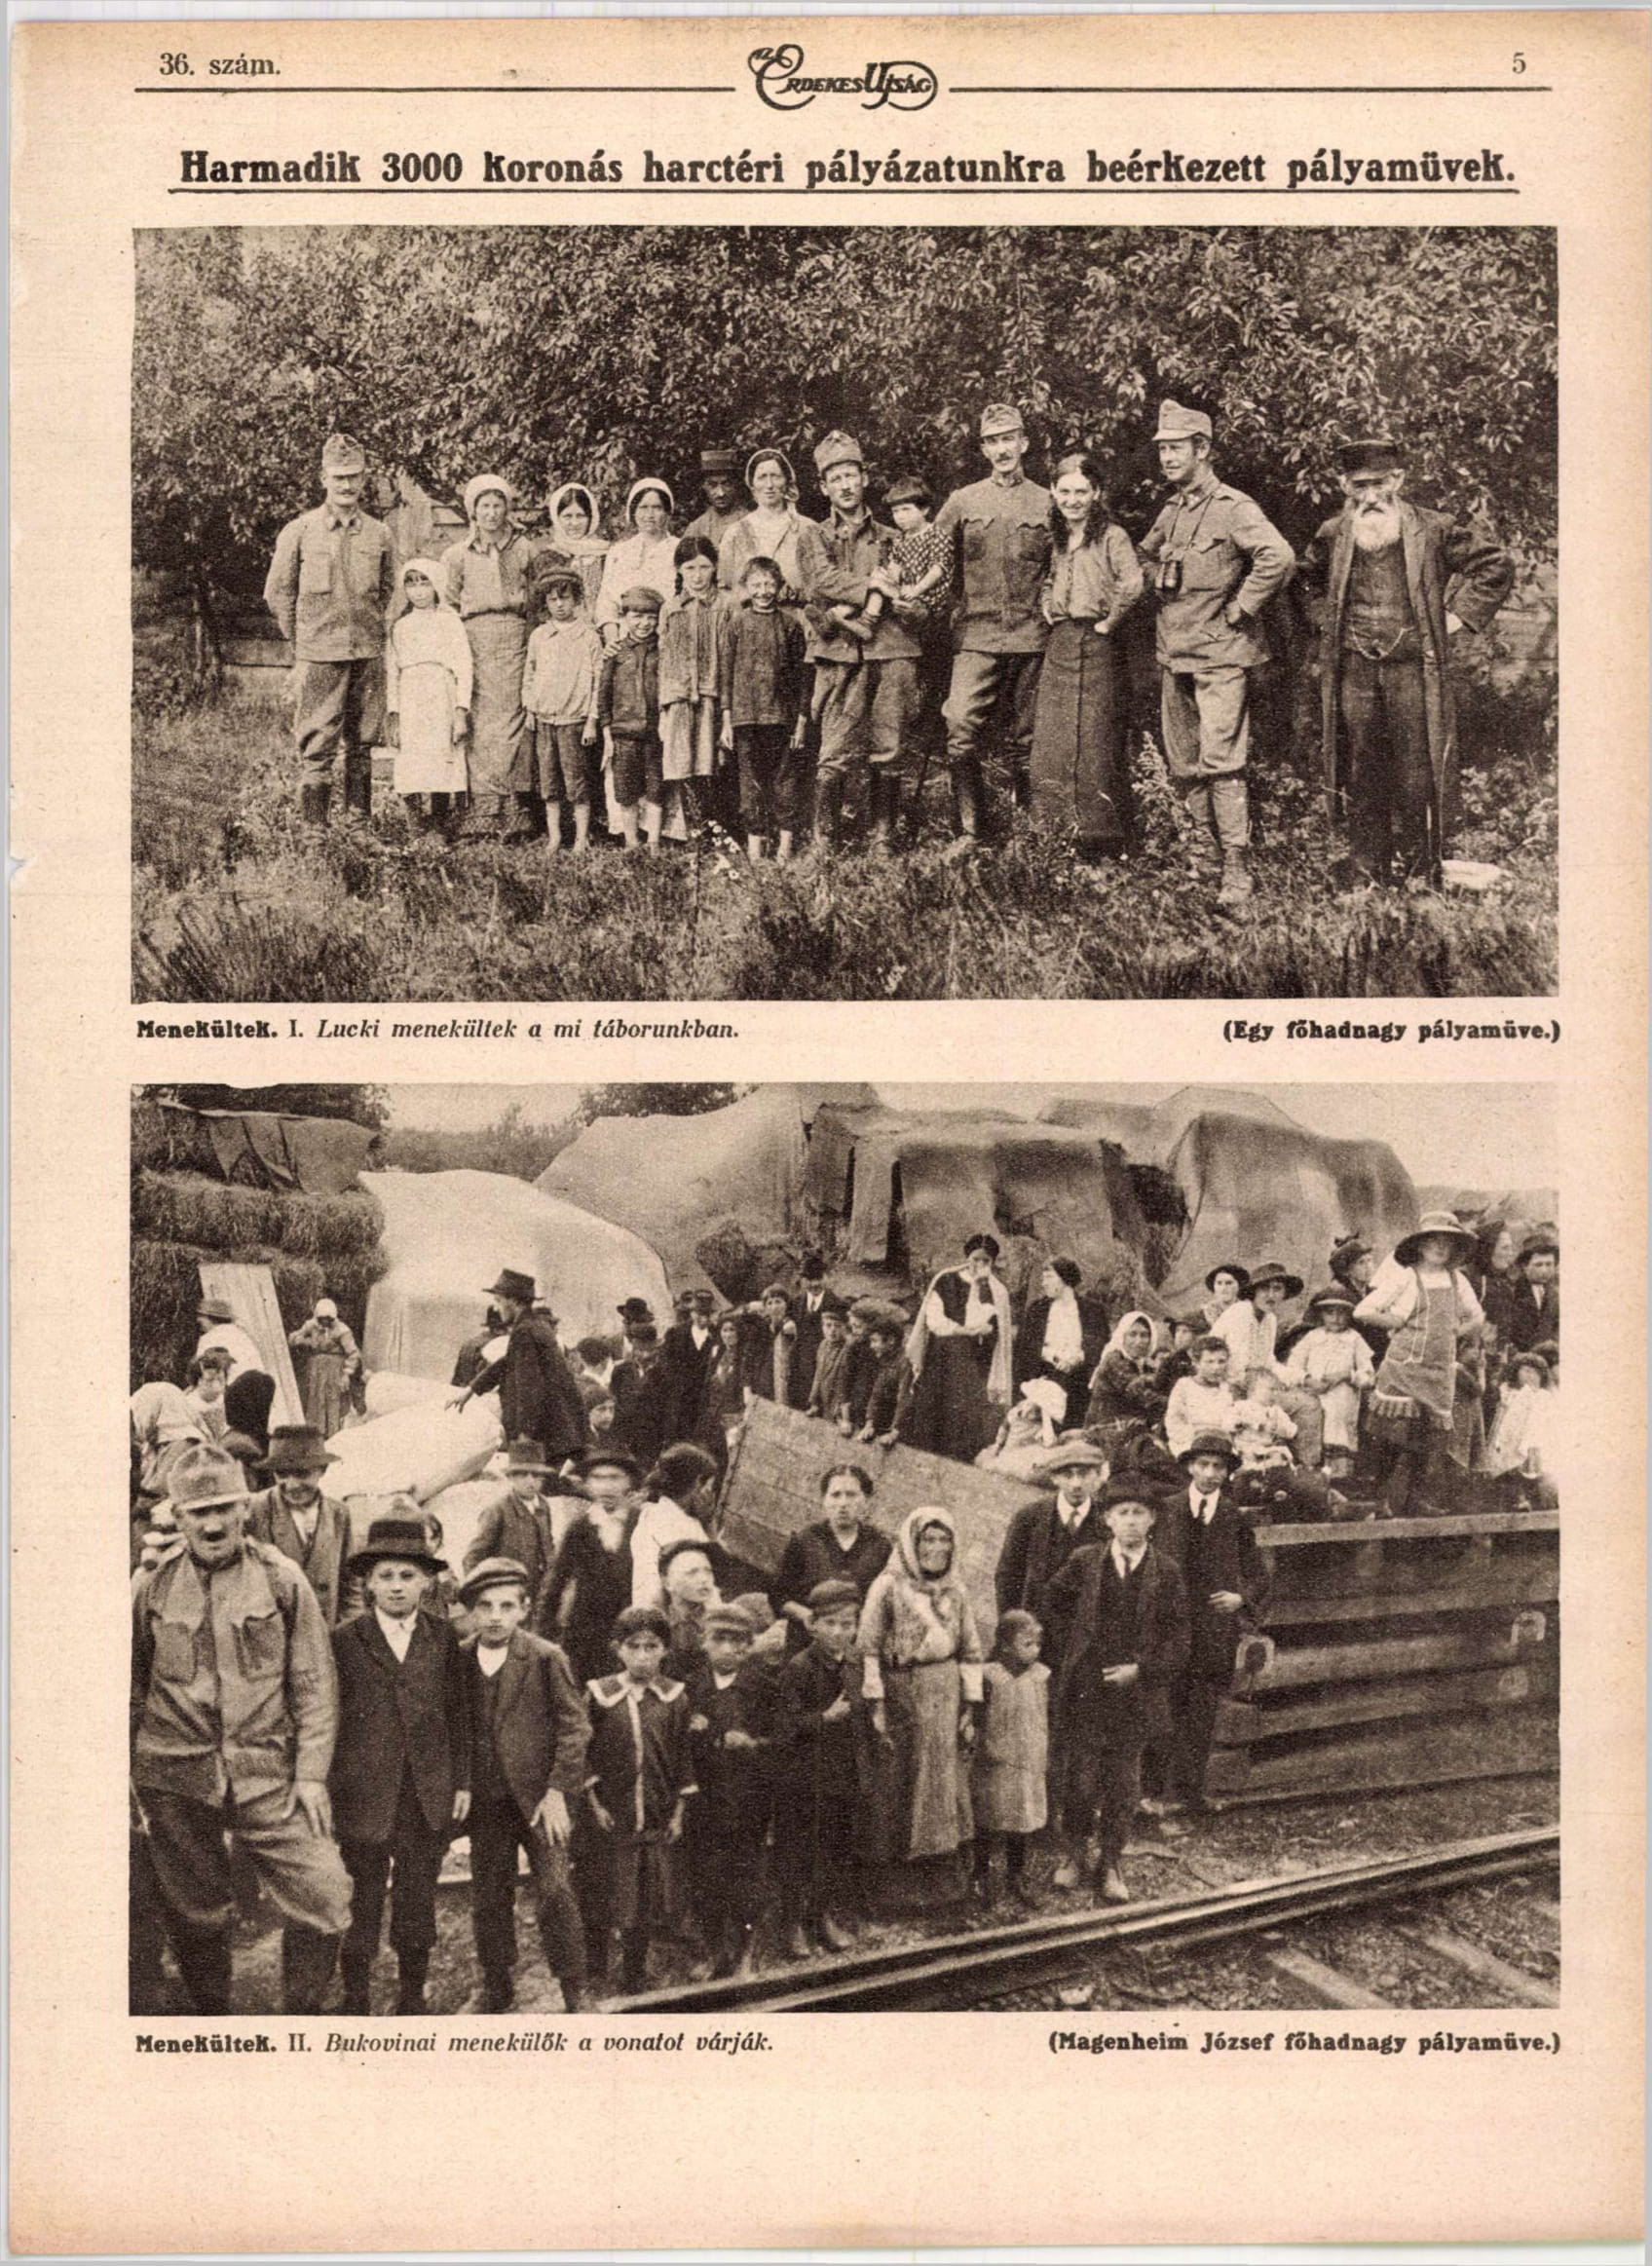 Fent:<br />Menekültek. I. Lucki menekültek a mi táborunkban. <br />(Egy főhadnagy pályaműve.)<br />Lent:<br />Menekültek. II. Bukovinai menekülők a vonatot várják.<br />(Magenheim József főhadnagy pályaműve)<br />Érdekes Ujság 1916<br />forrás: adtplus.arcanum.hu 